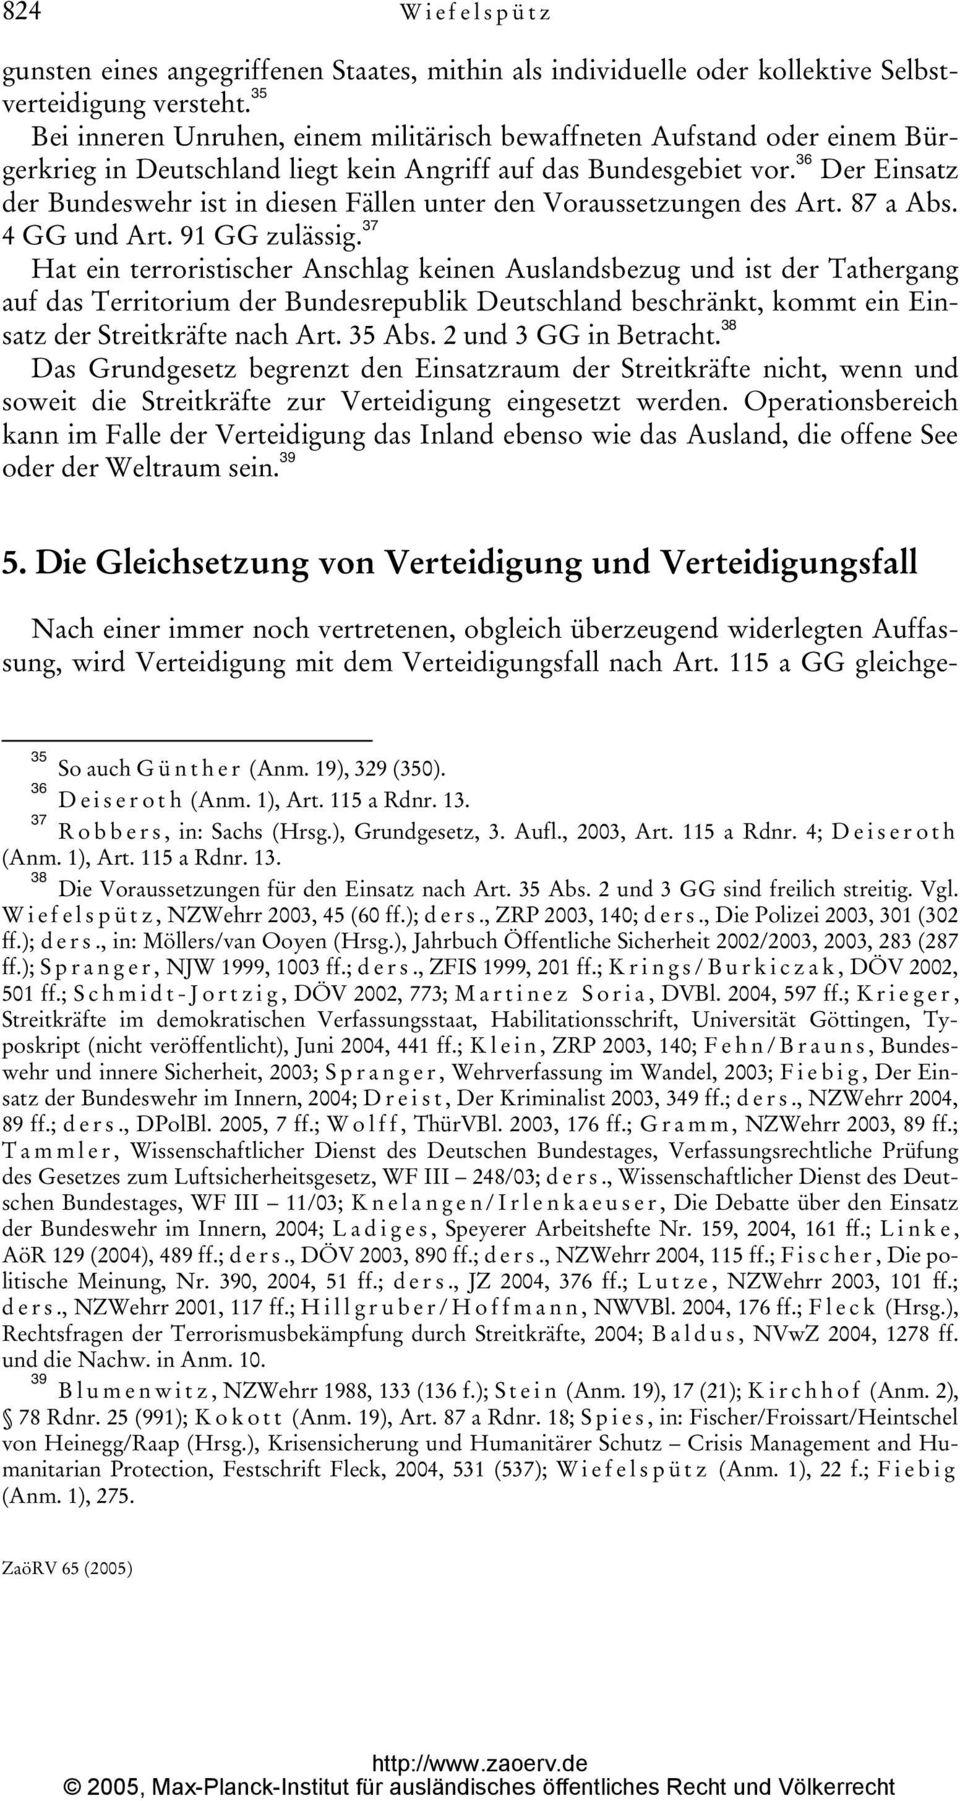 36 Der Einsatz der Bundeswehr ist in diesen Fällen unter den Voraussetzungen des Art. 87 a Abs. 4 GG und Art. 91 GG zulässig.